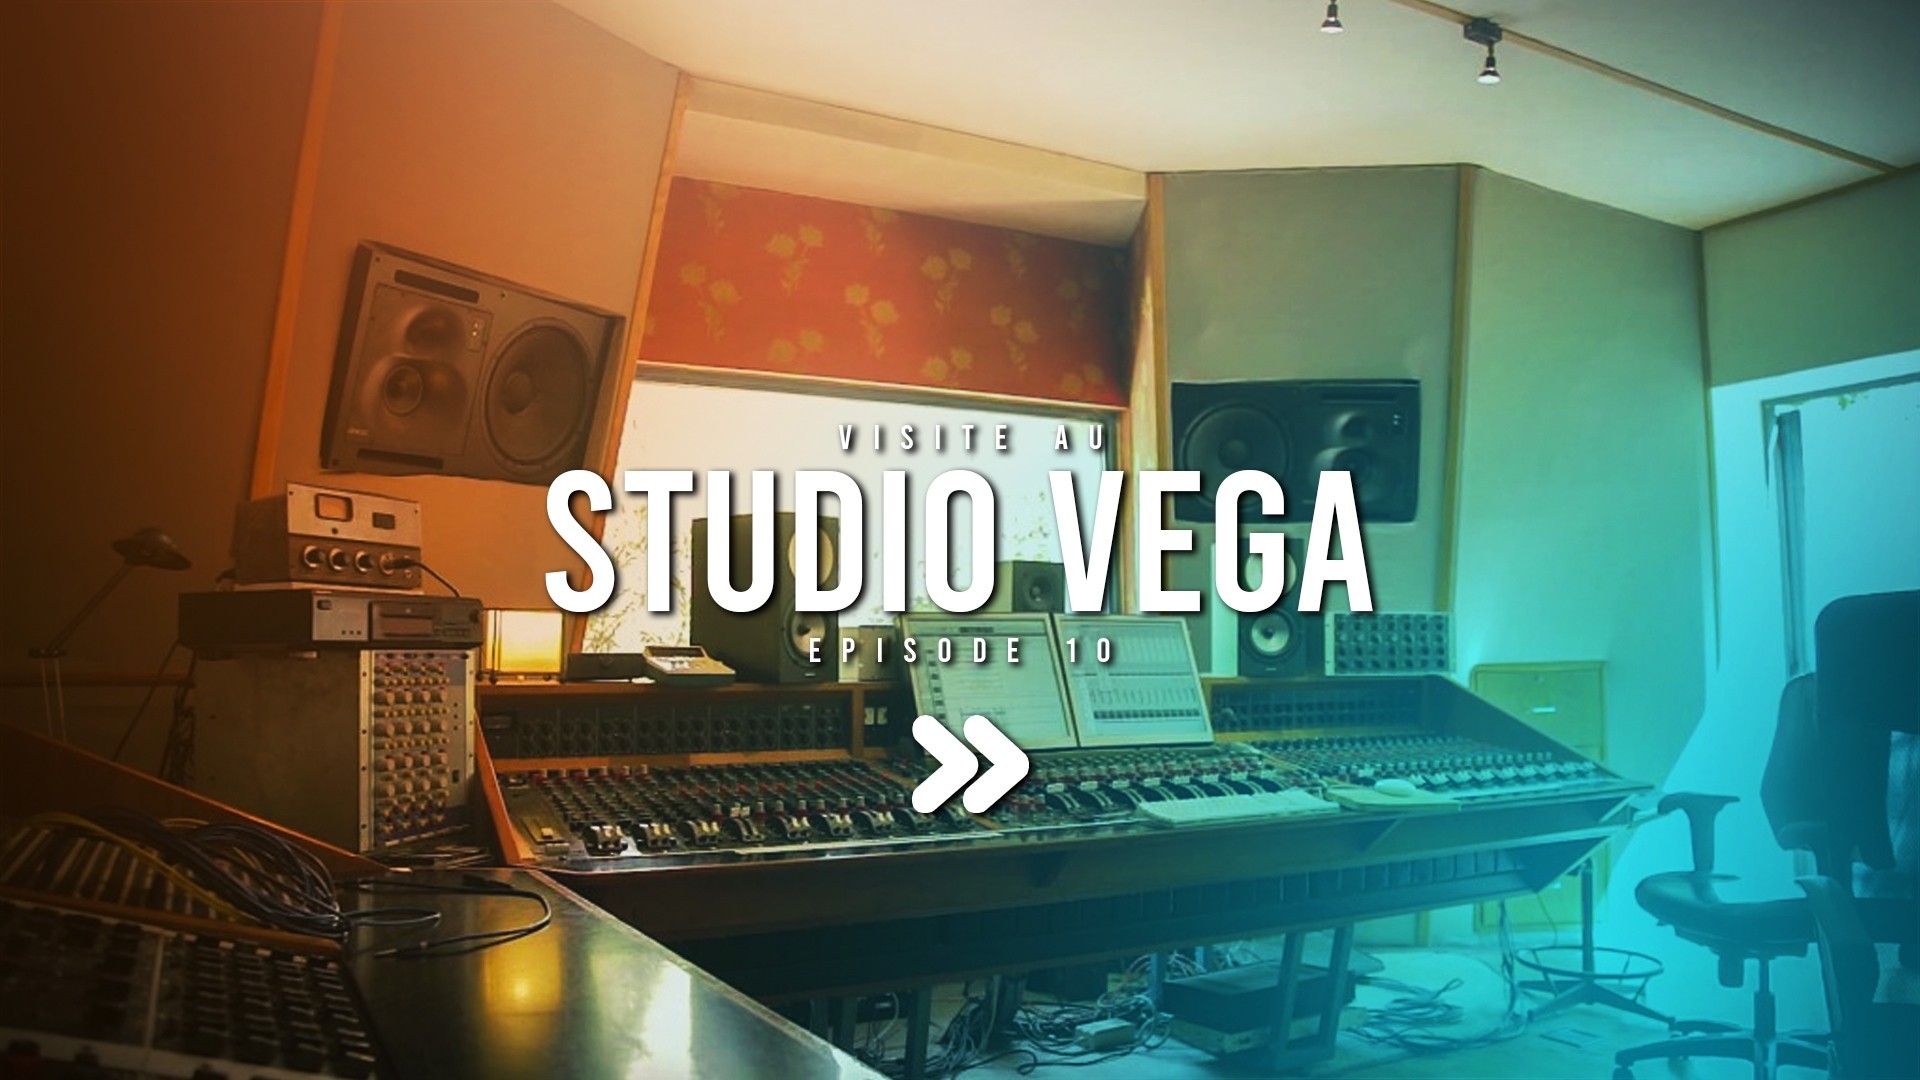 Visite au studio Vega